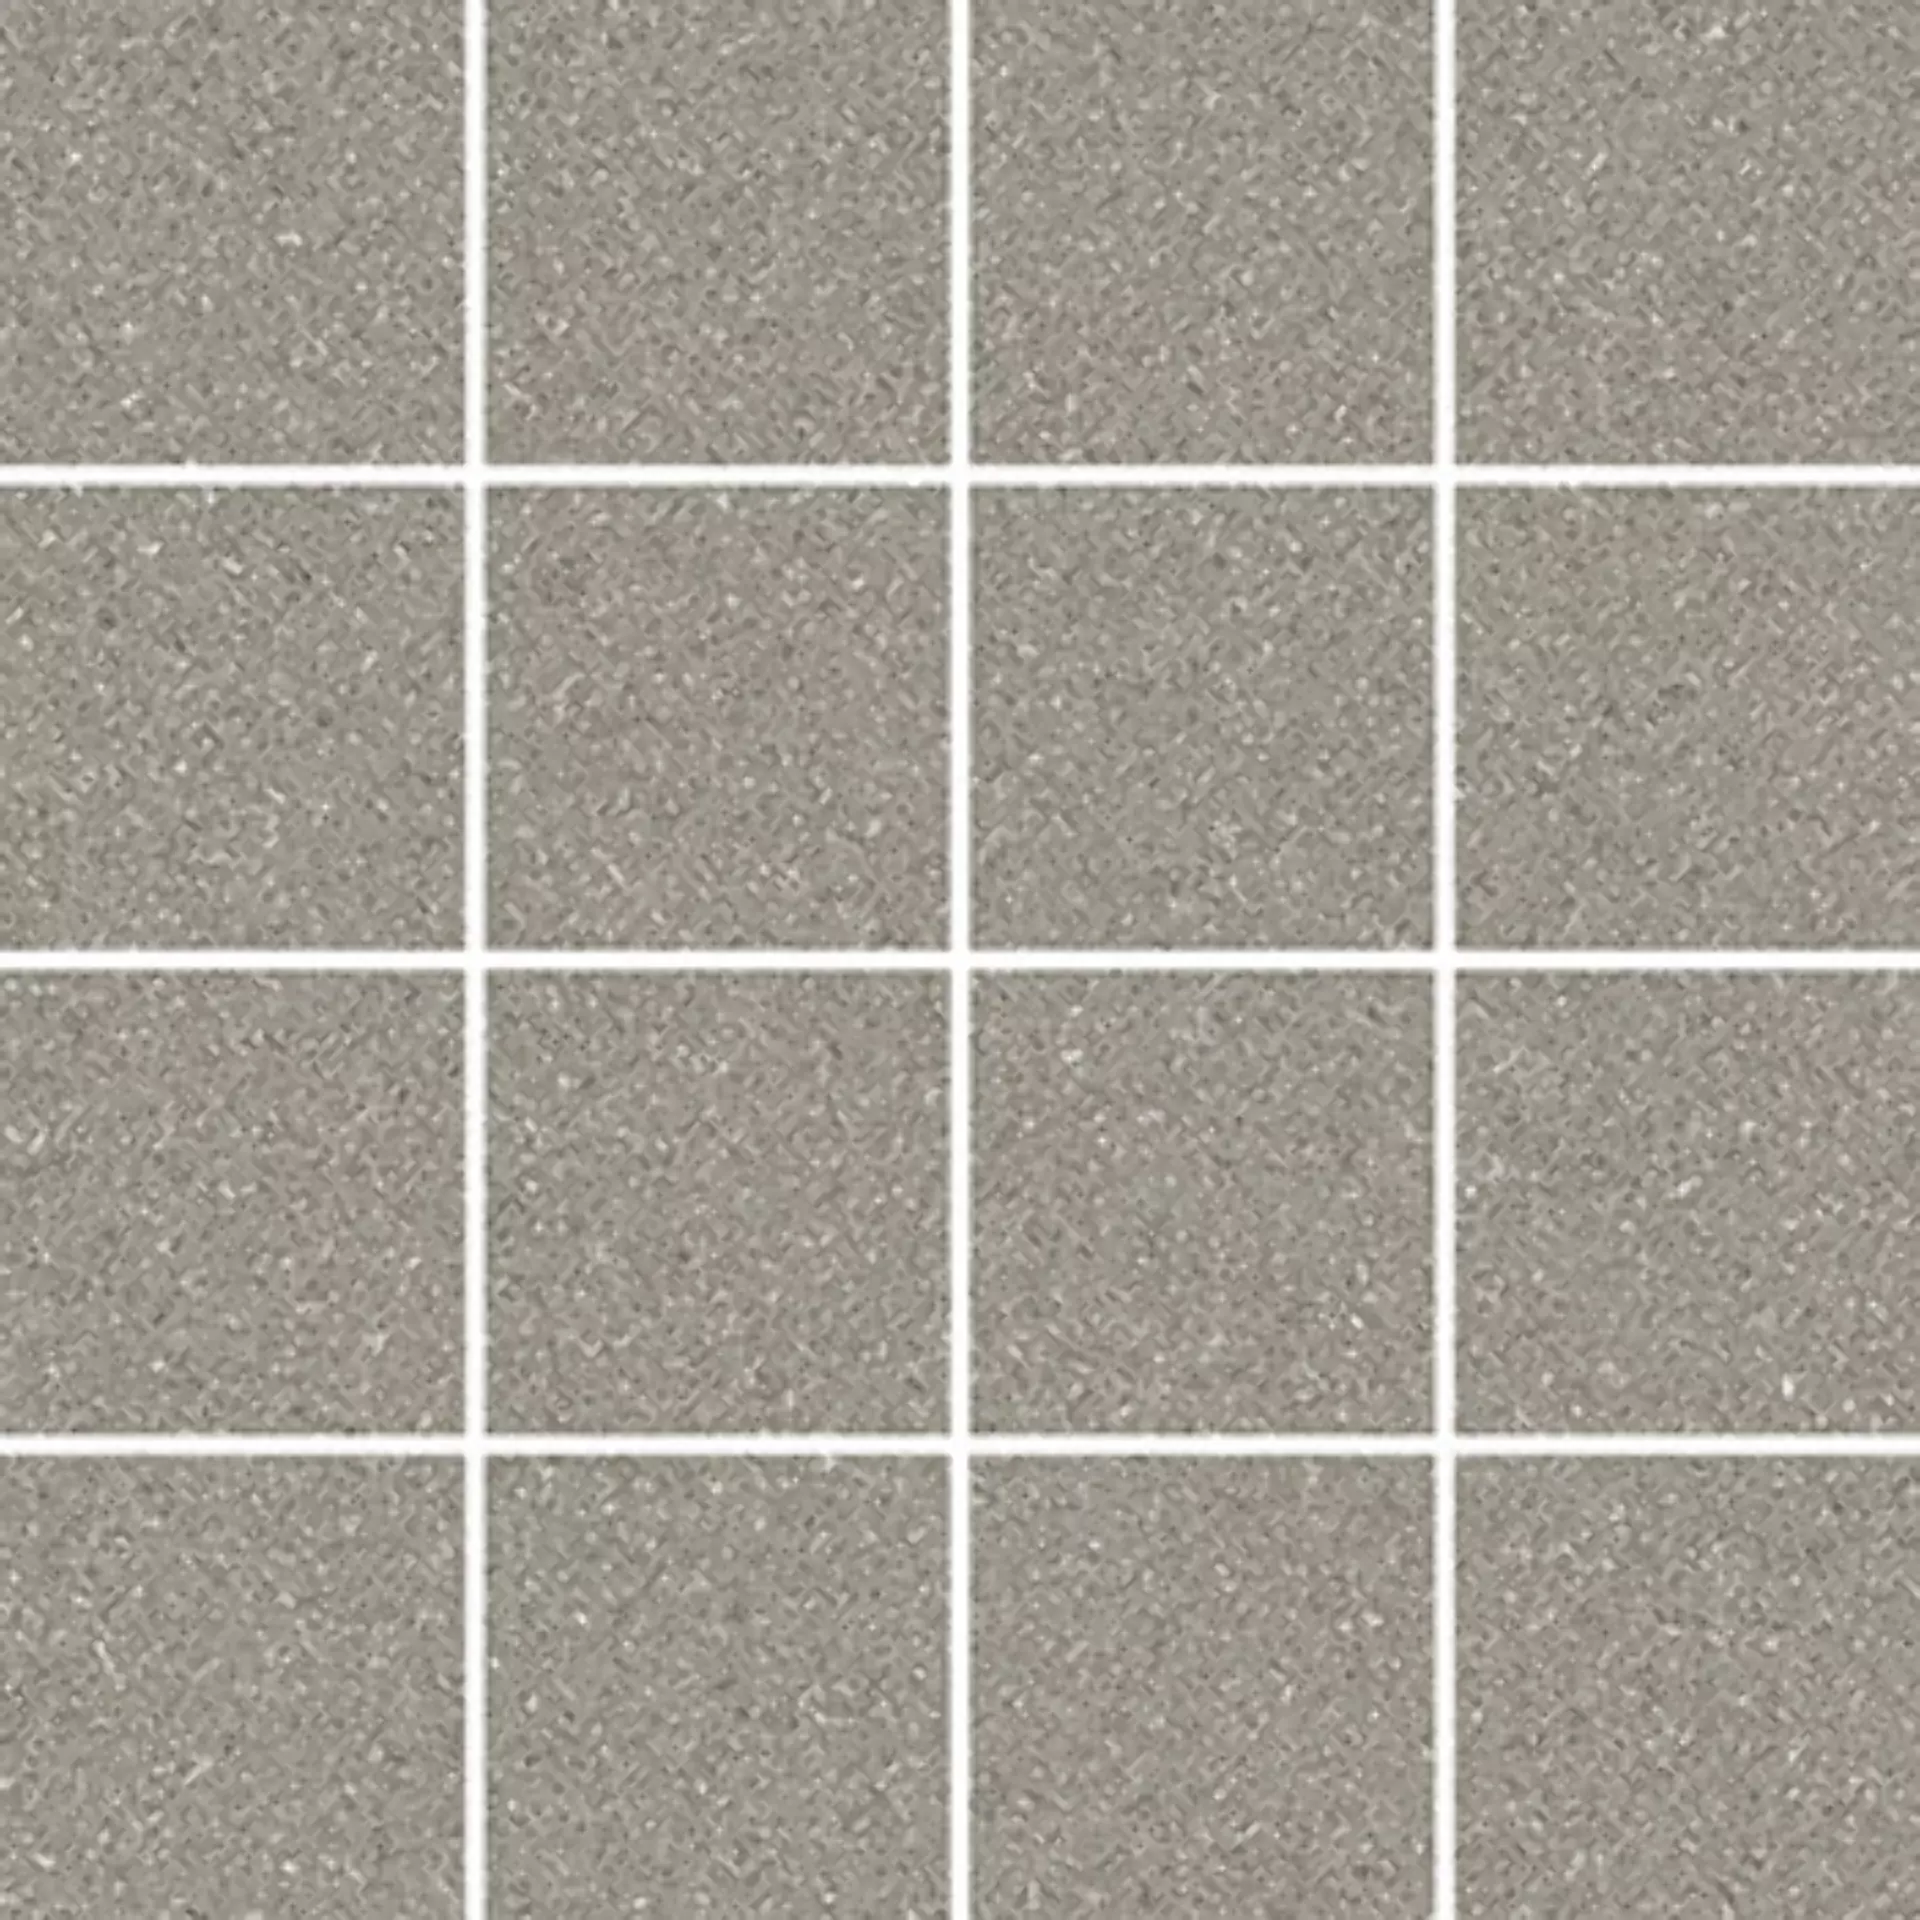 Villeroy & Boch Pure Line 2.0 Cement Grey Matt Mosaic (7,5x7,5) 2013-UL61 7,5x7,5cm rectified 12mm